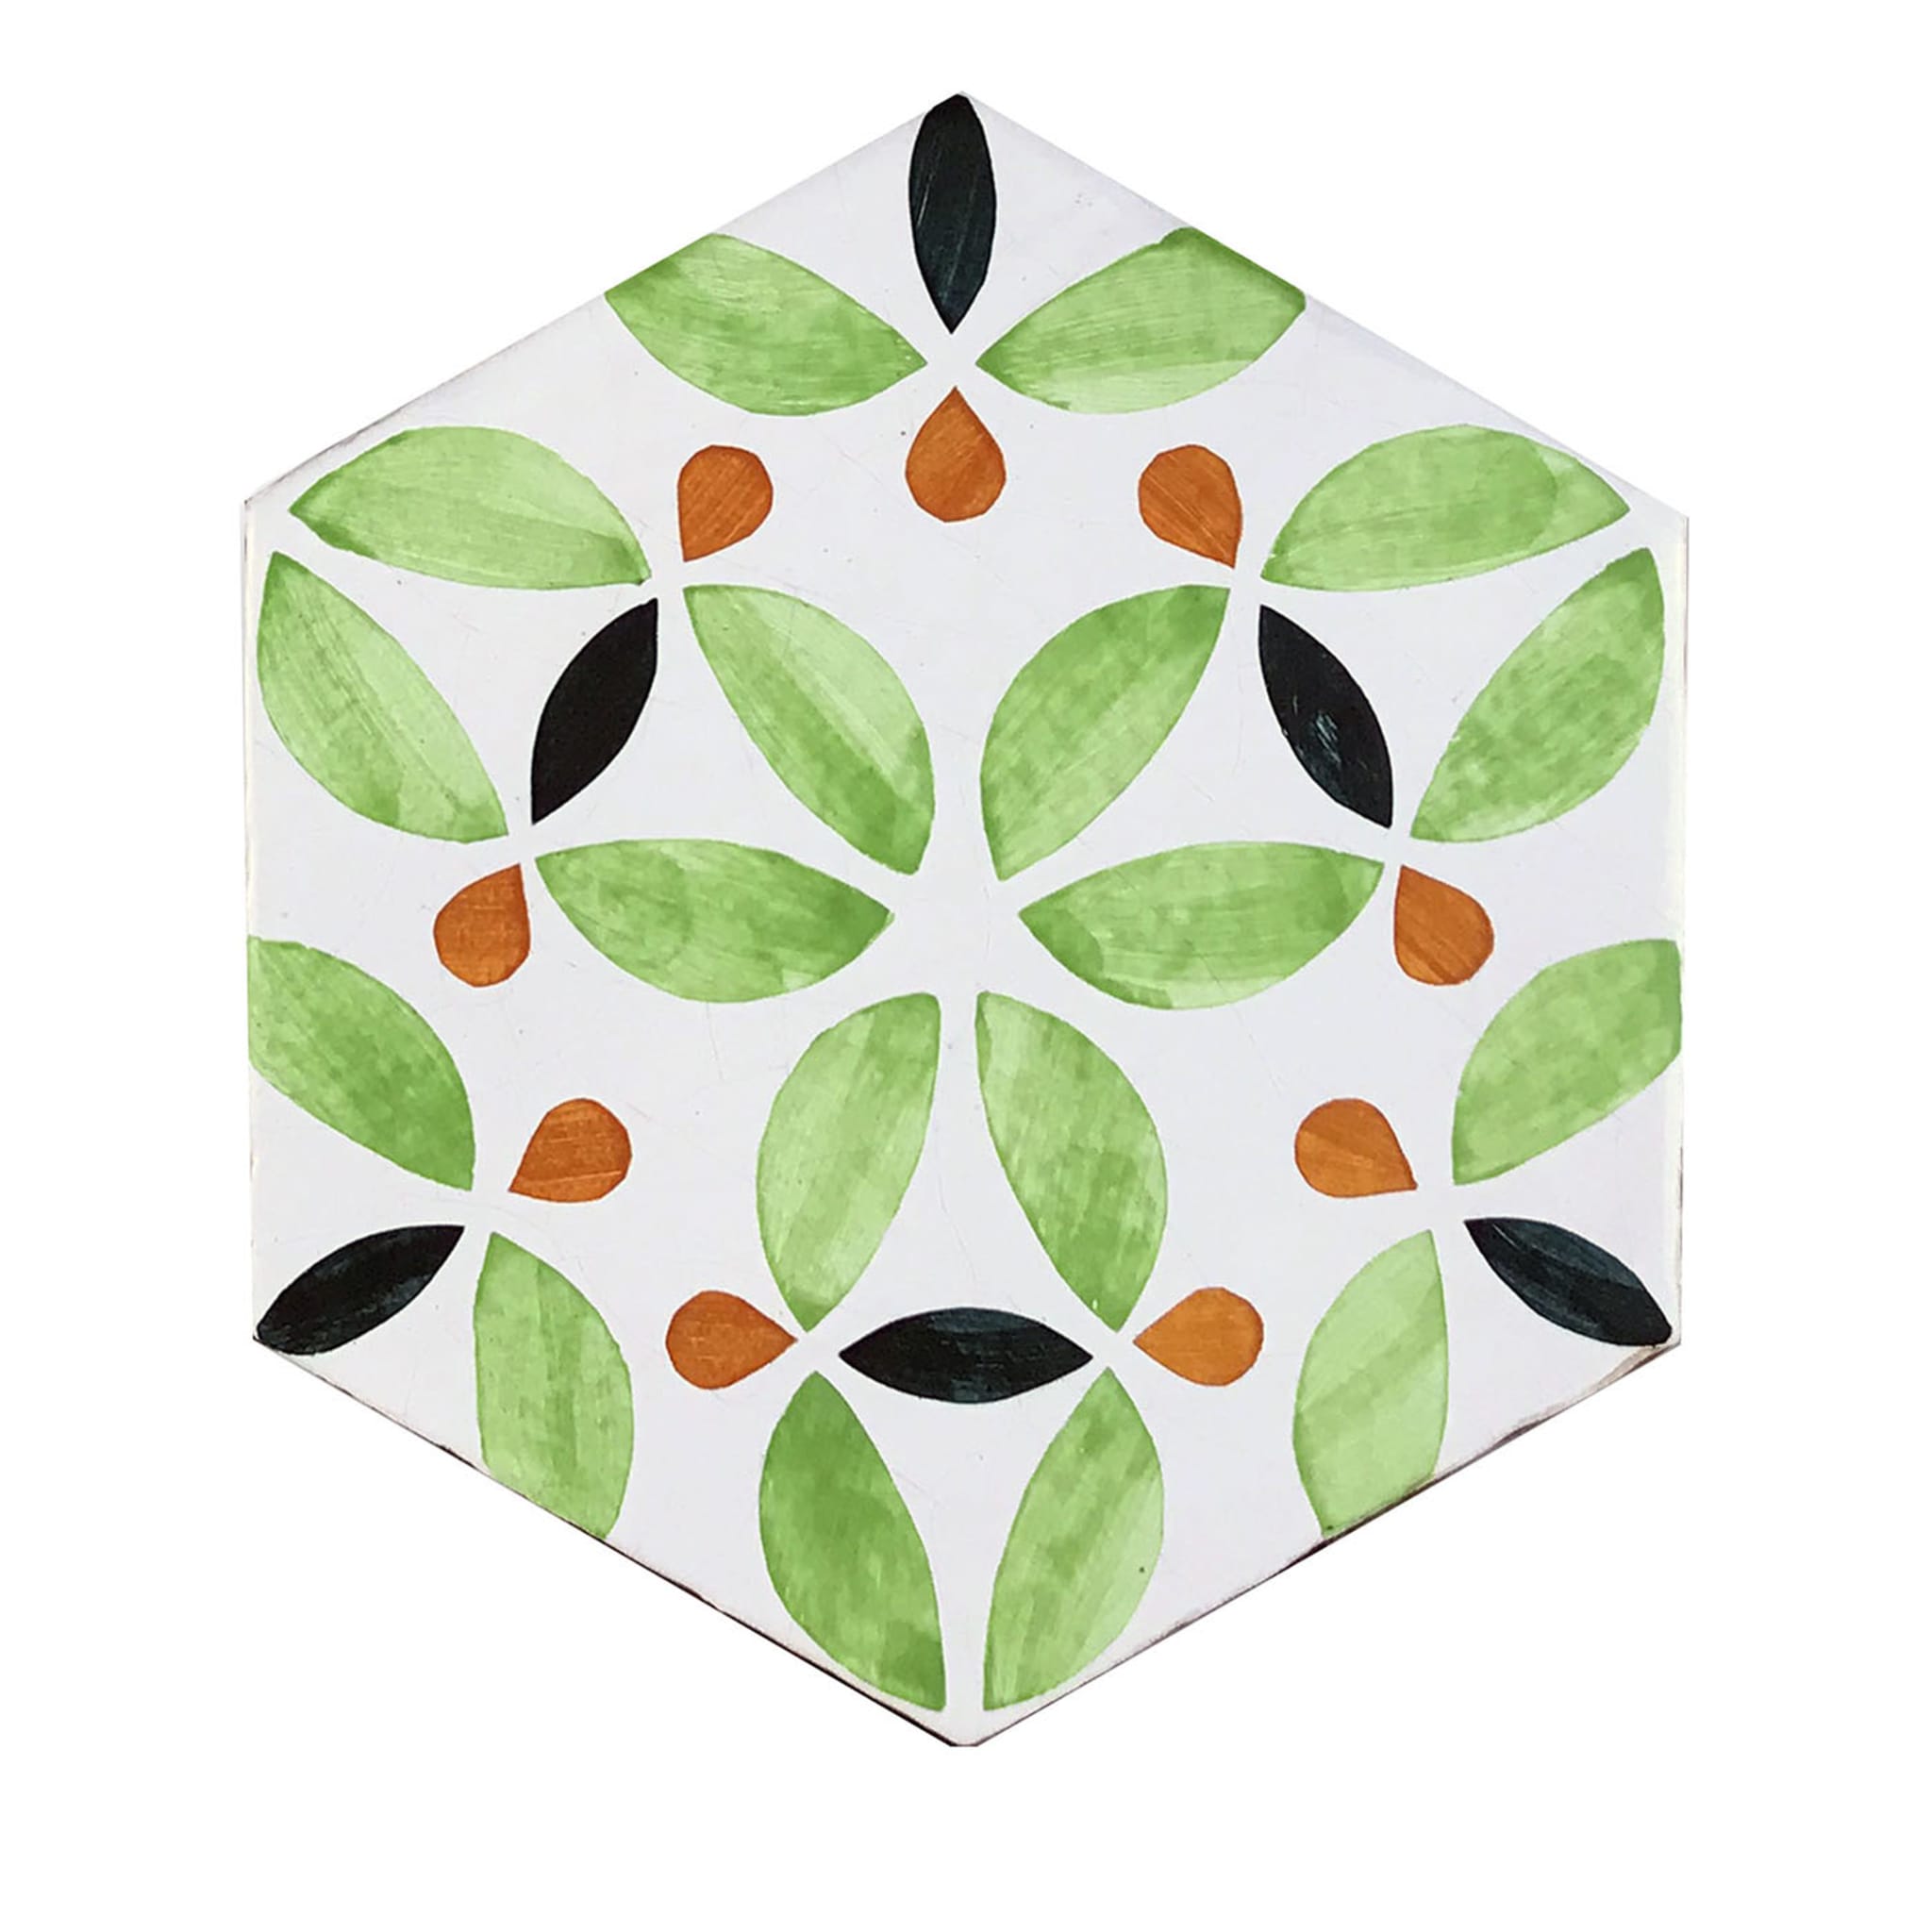 Daamè Set of 28 Hexagonal Light Green Tiles - Main view